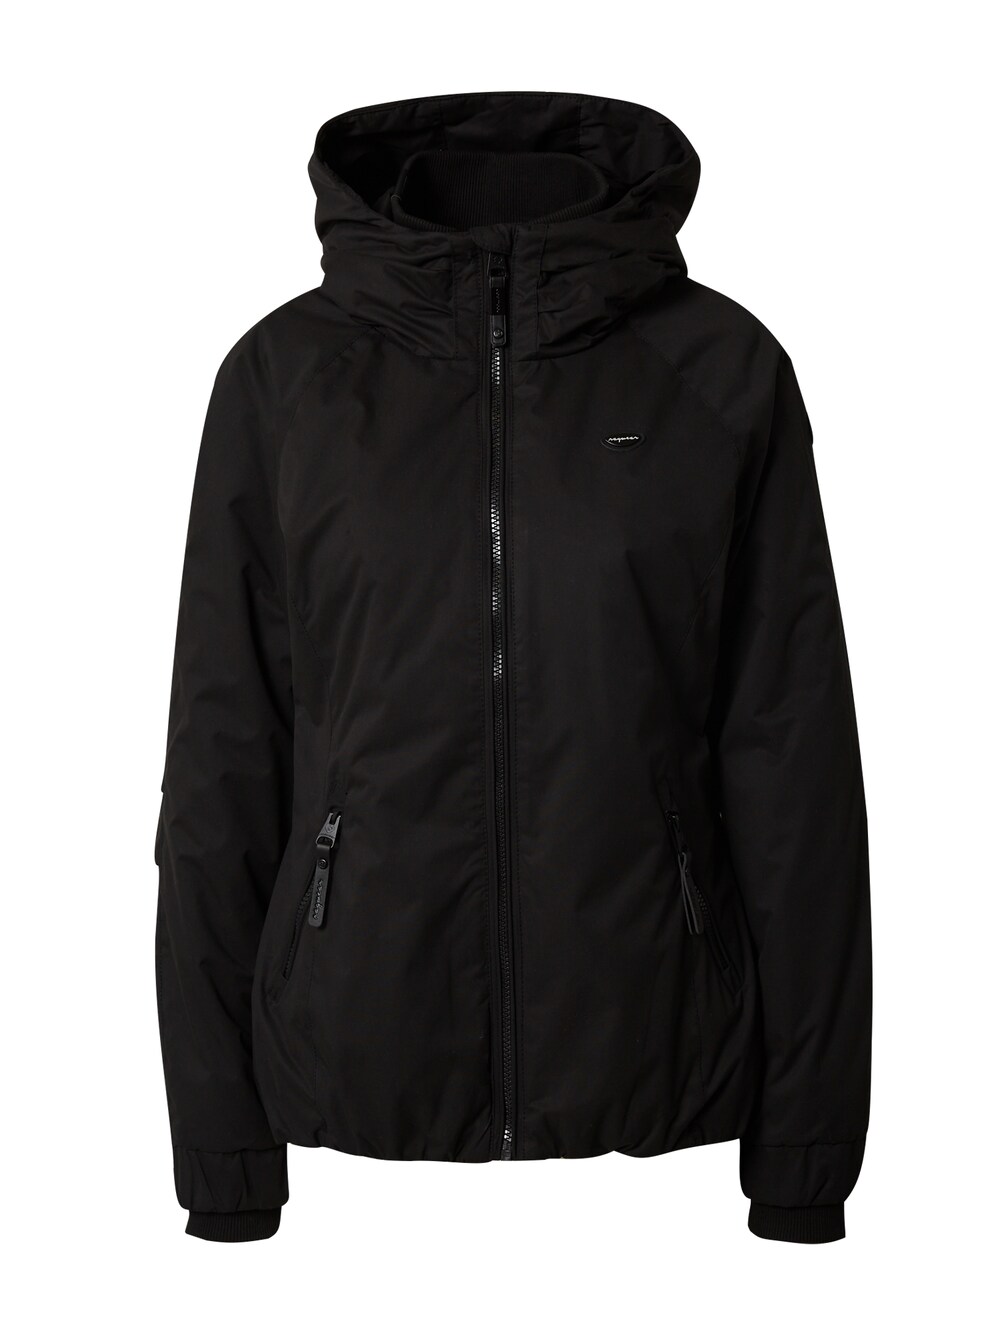 Межсезонная куртка Ragwear Dizzie, черный межсезонная куртка ragwear margge оливковый